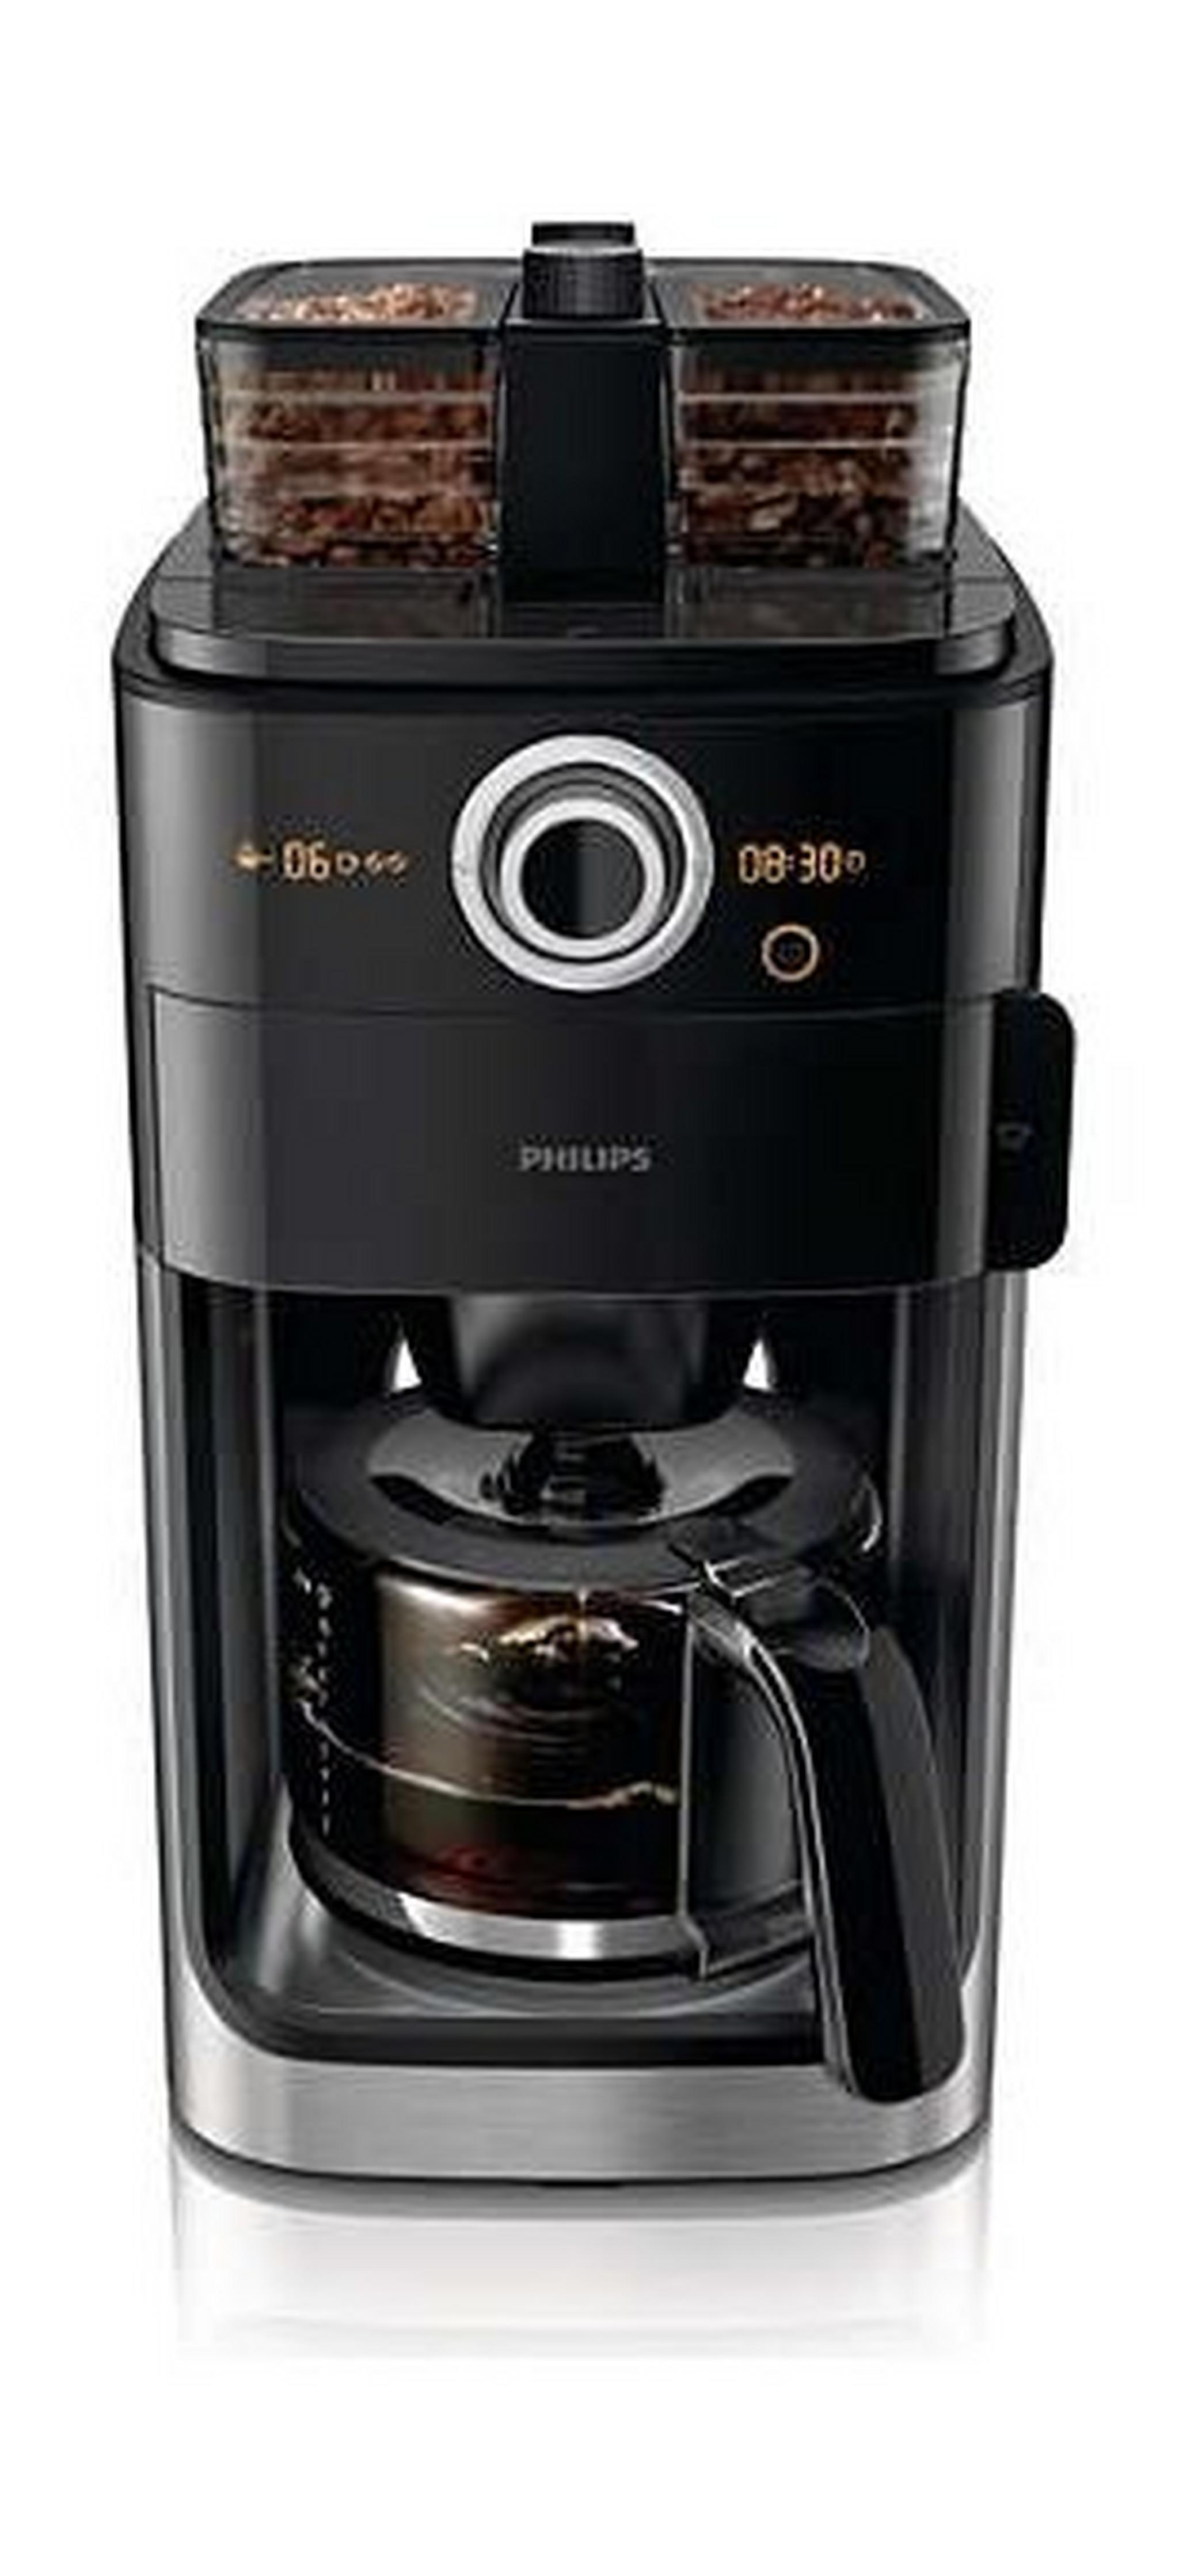 ماكينة تحضير القهوة من فيليبس - HD7762